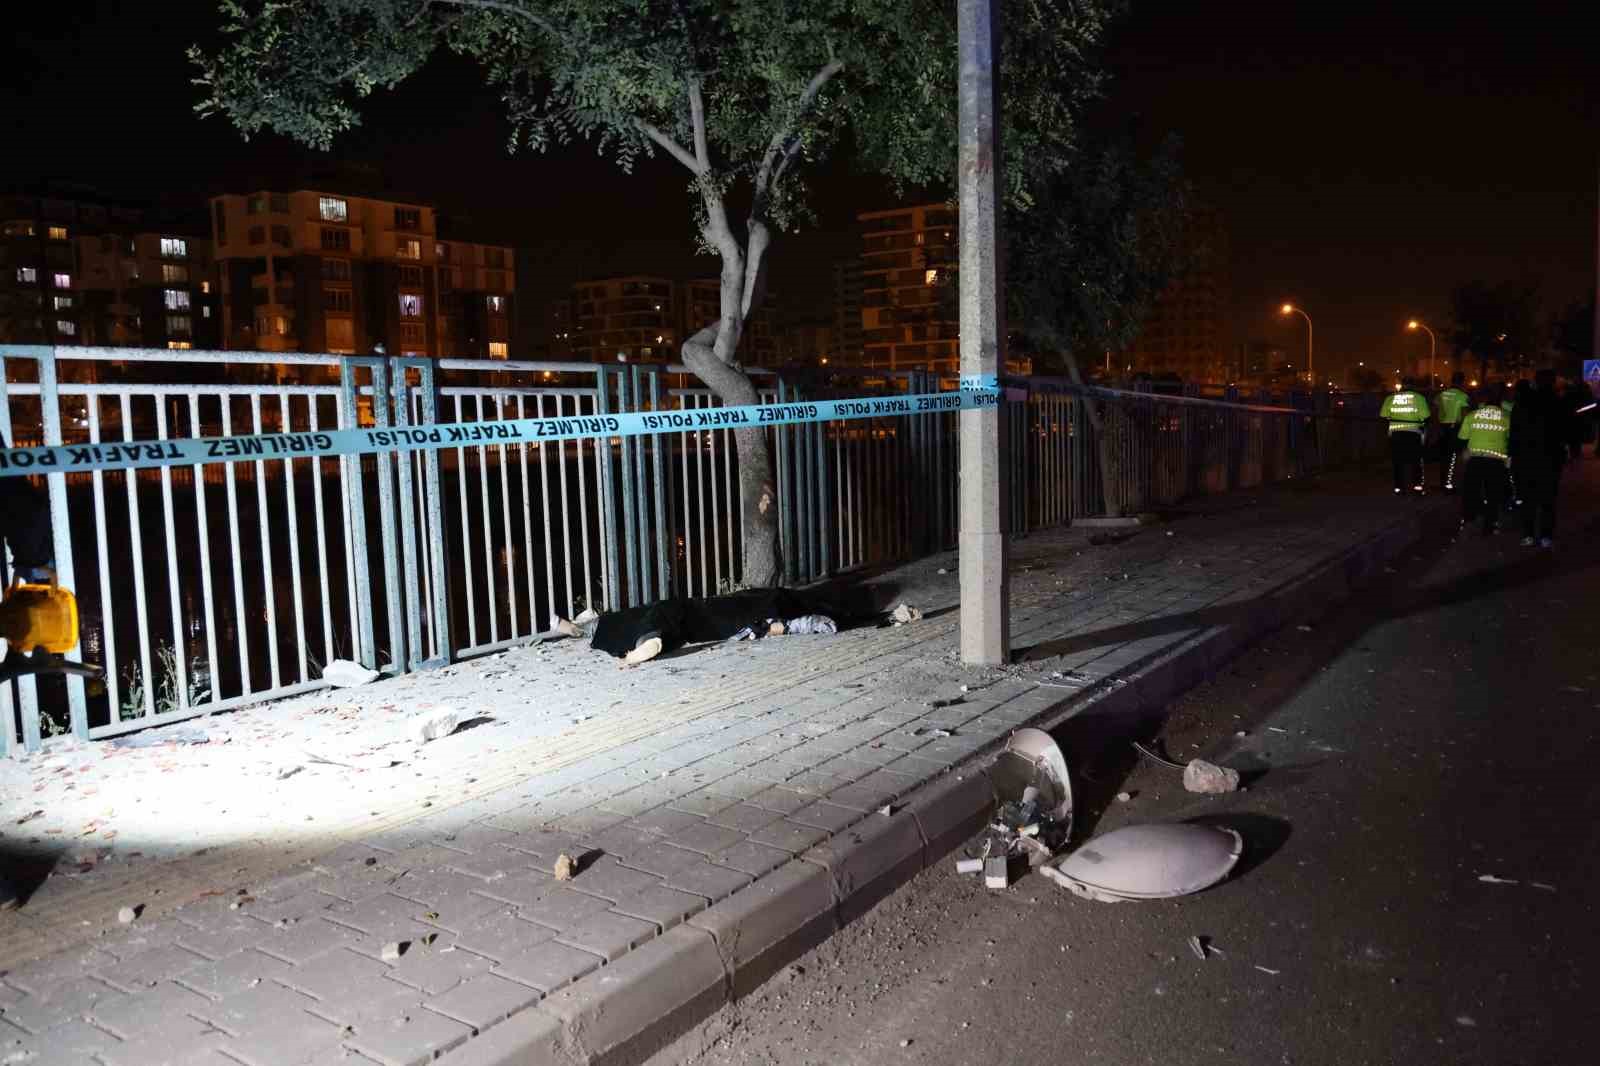 Adana’da feci kaza... Kontrolden çıkan motosiklet kaldırıma çarpıp sürüklendi: 2 ölü
